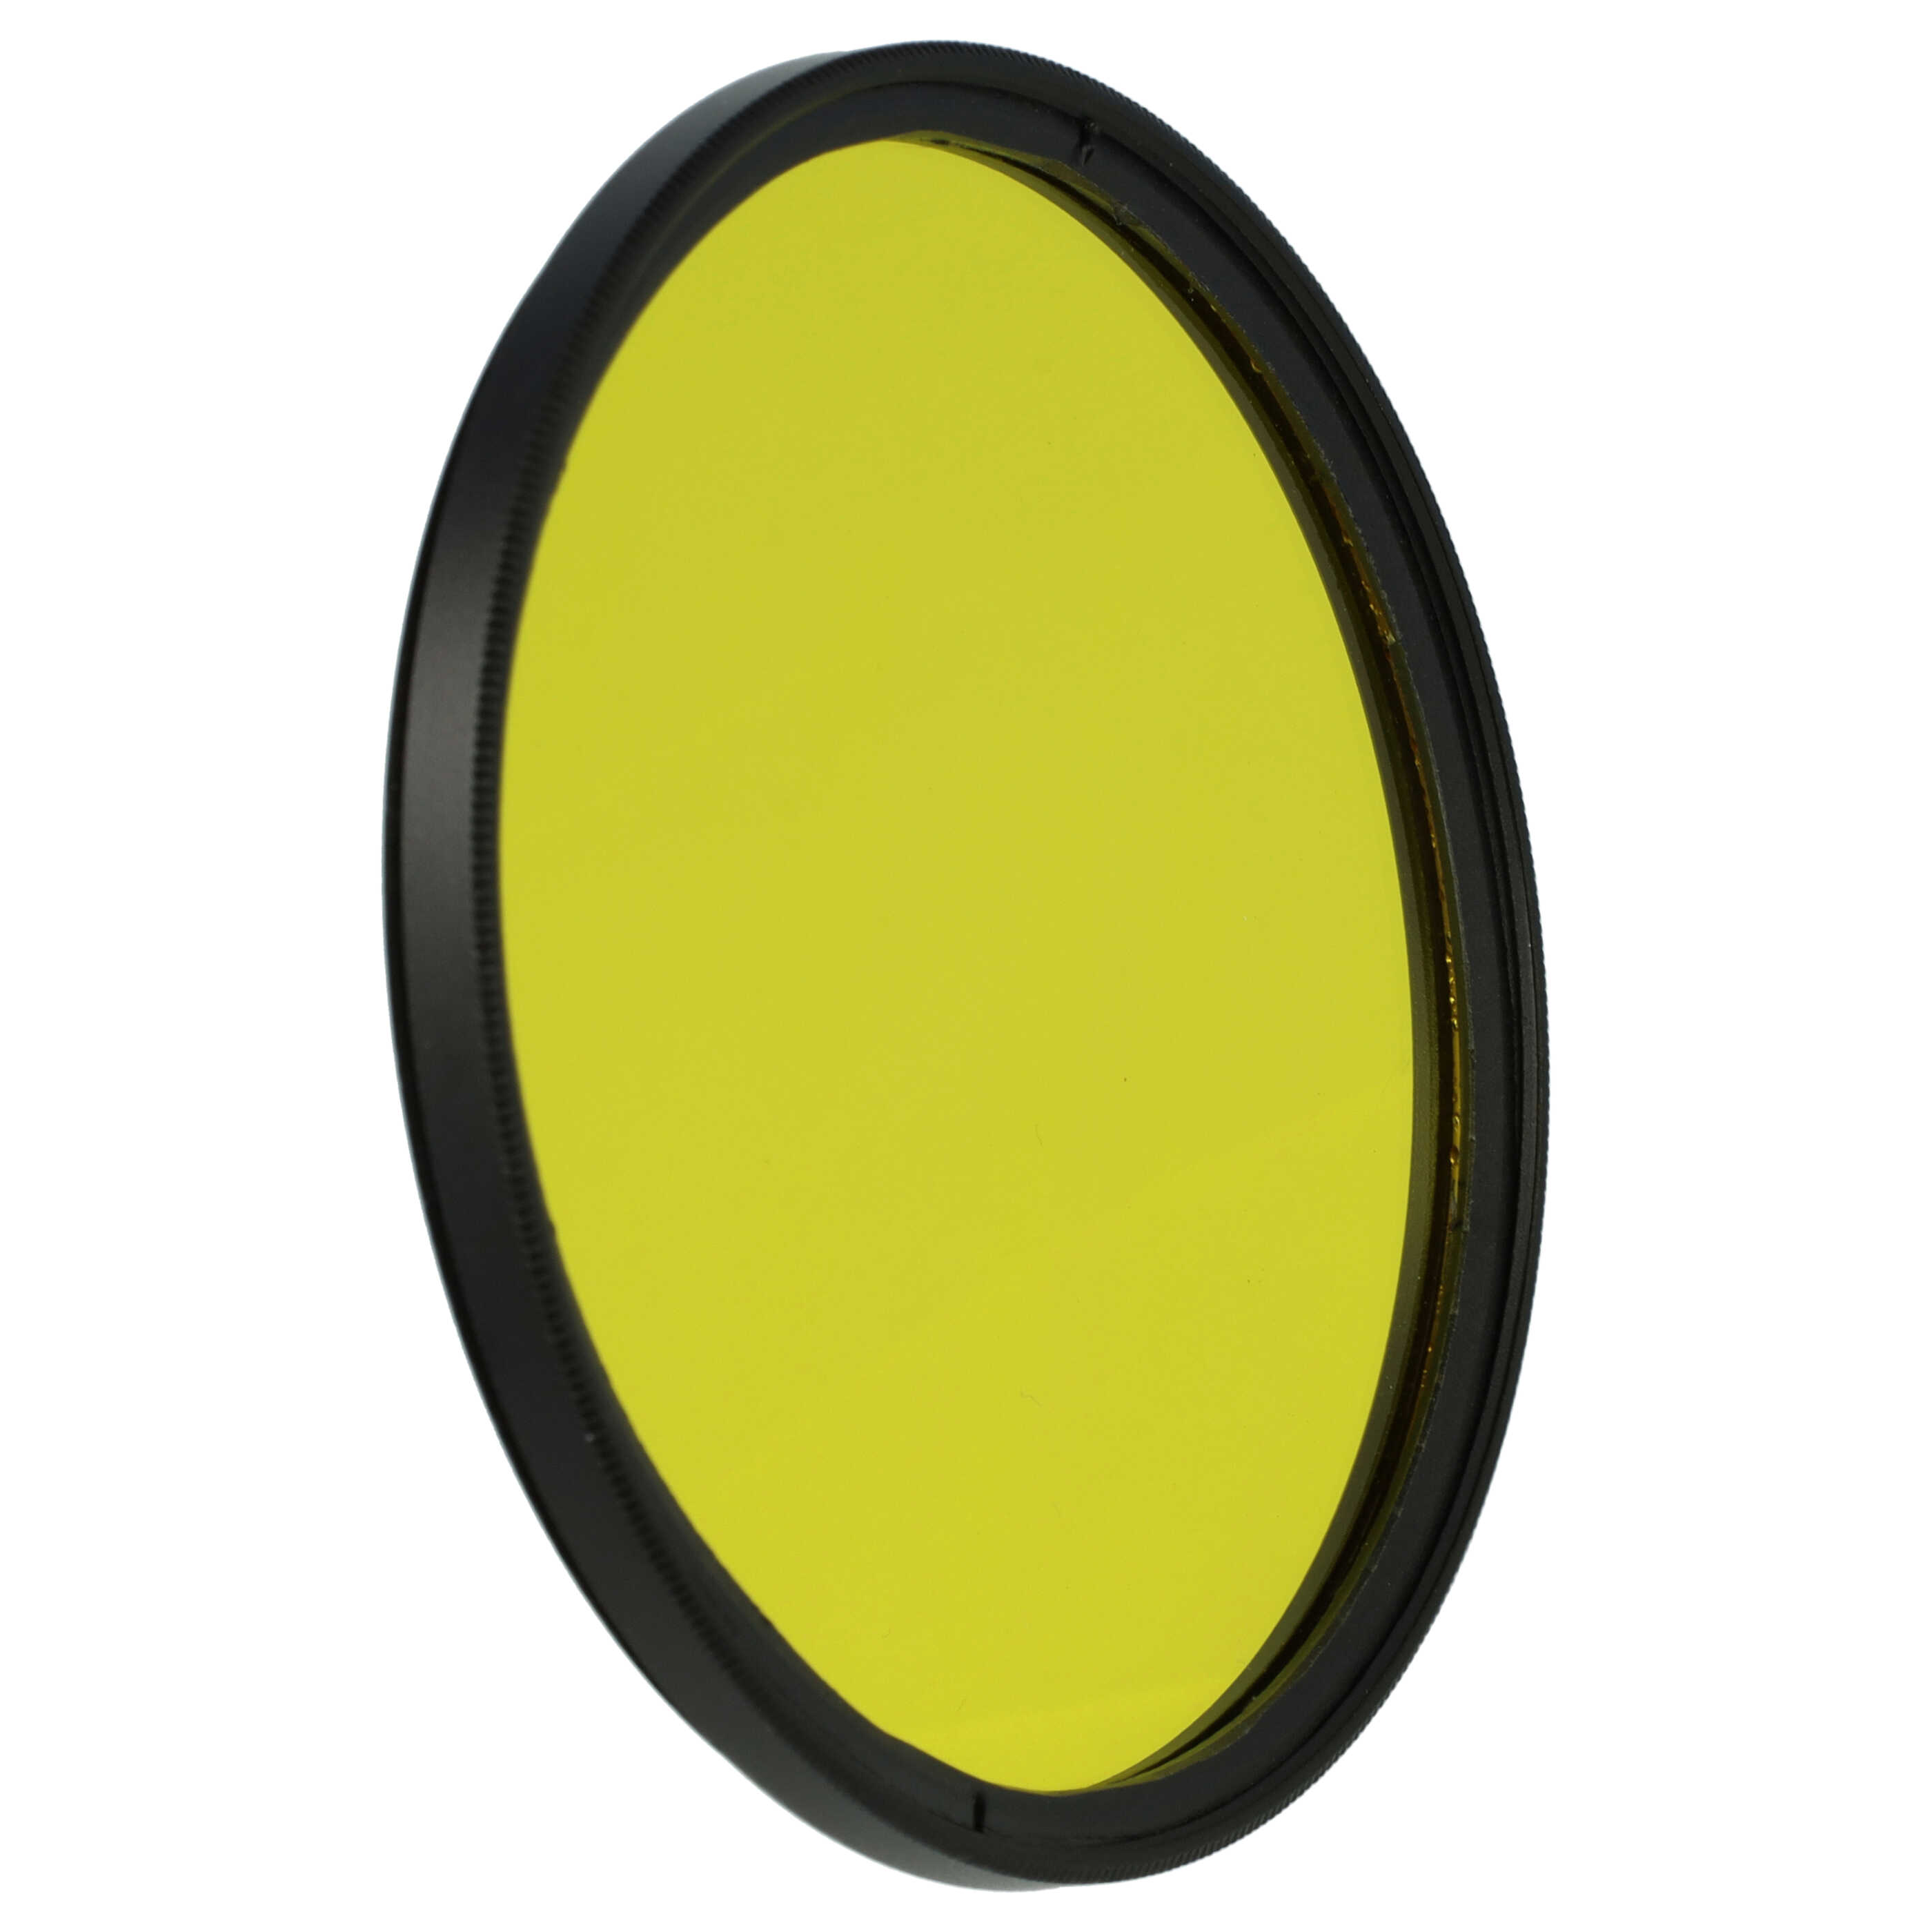 Filtro de color para objetivo de cámara con rosca de filtro de 72 mm - Filtro amarillo